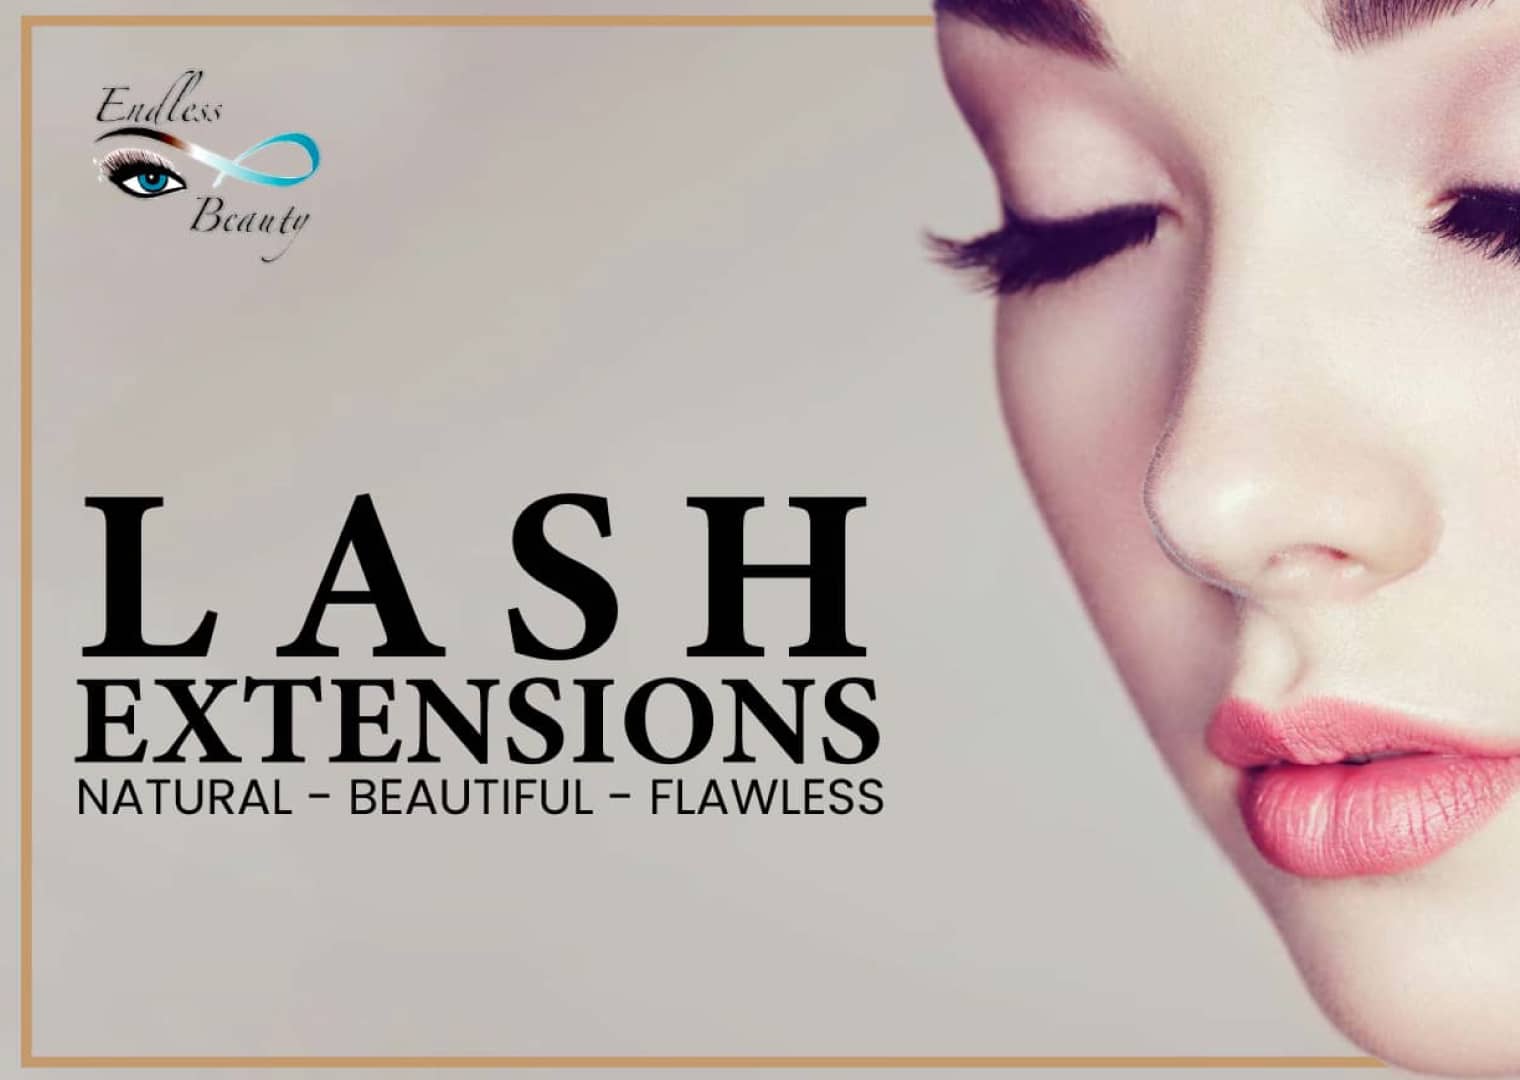 Endless Beauty Salon lash extensions